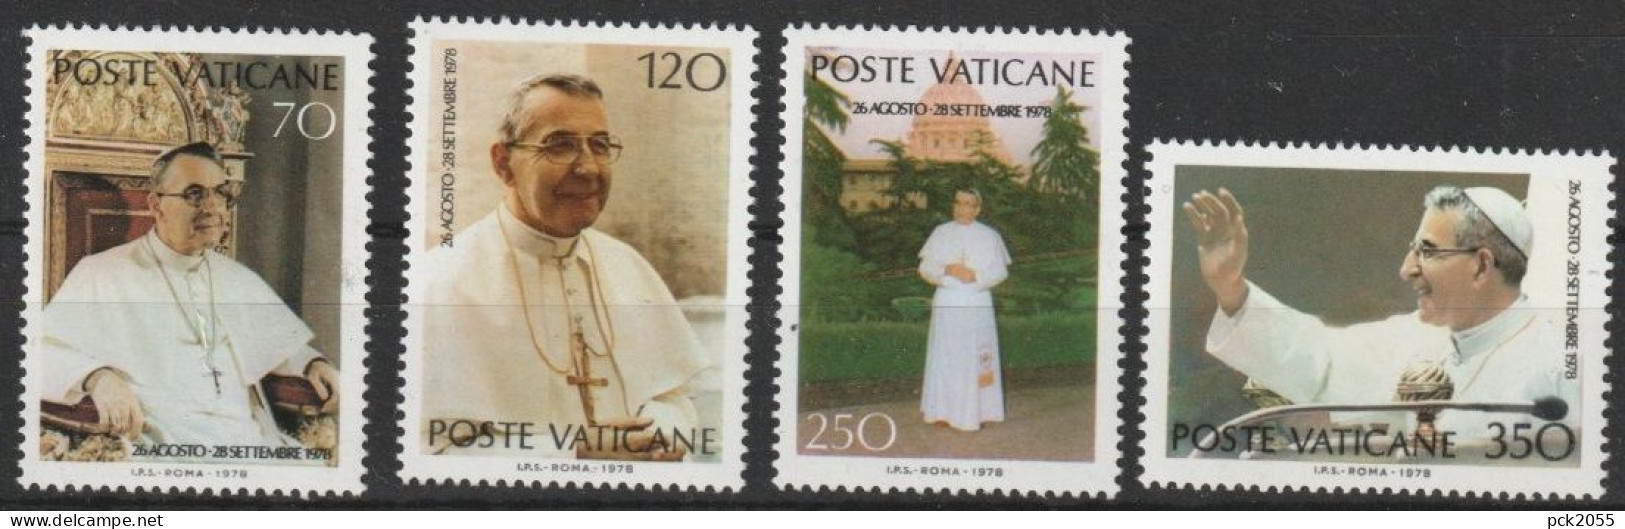 Vatikan 1978 Mi-Nr.732 - 735 ** Postfrisch. Papst Johannes Paul I.  ( B 2870 ))günstige Versandkosten - Unused Stamps